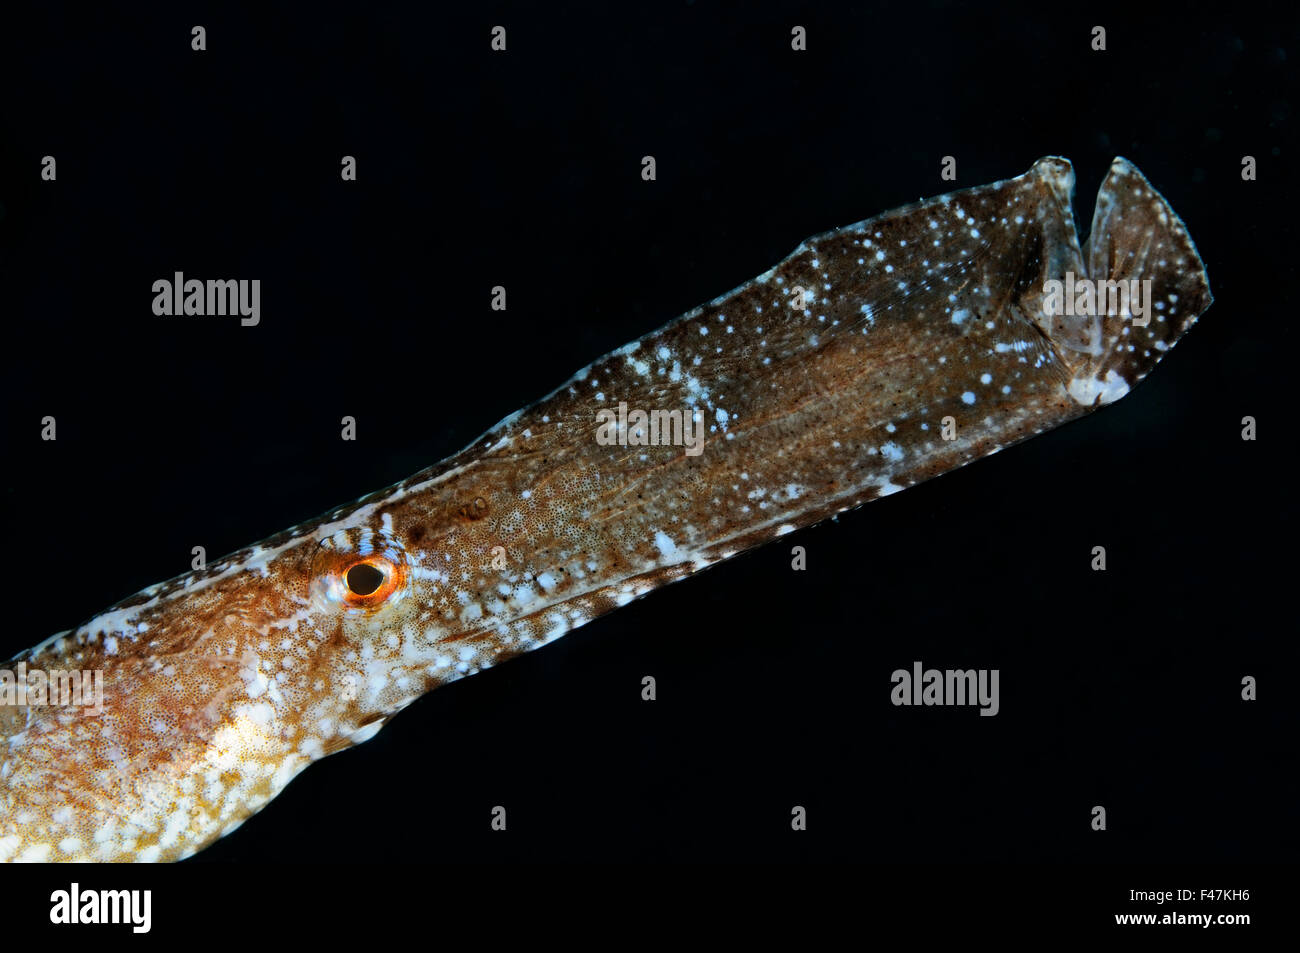 Syngnathus typle, Greater pipefish, Xwejni-Bay, Gozo, Malta, South Europe, Mediterranean Sea Stock Photo